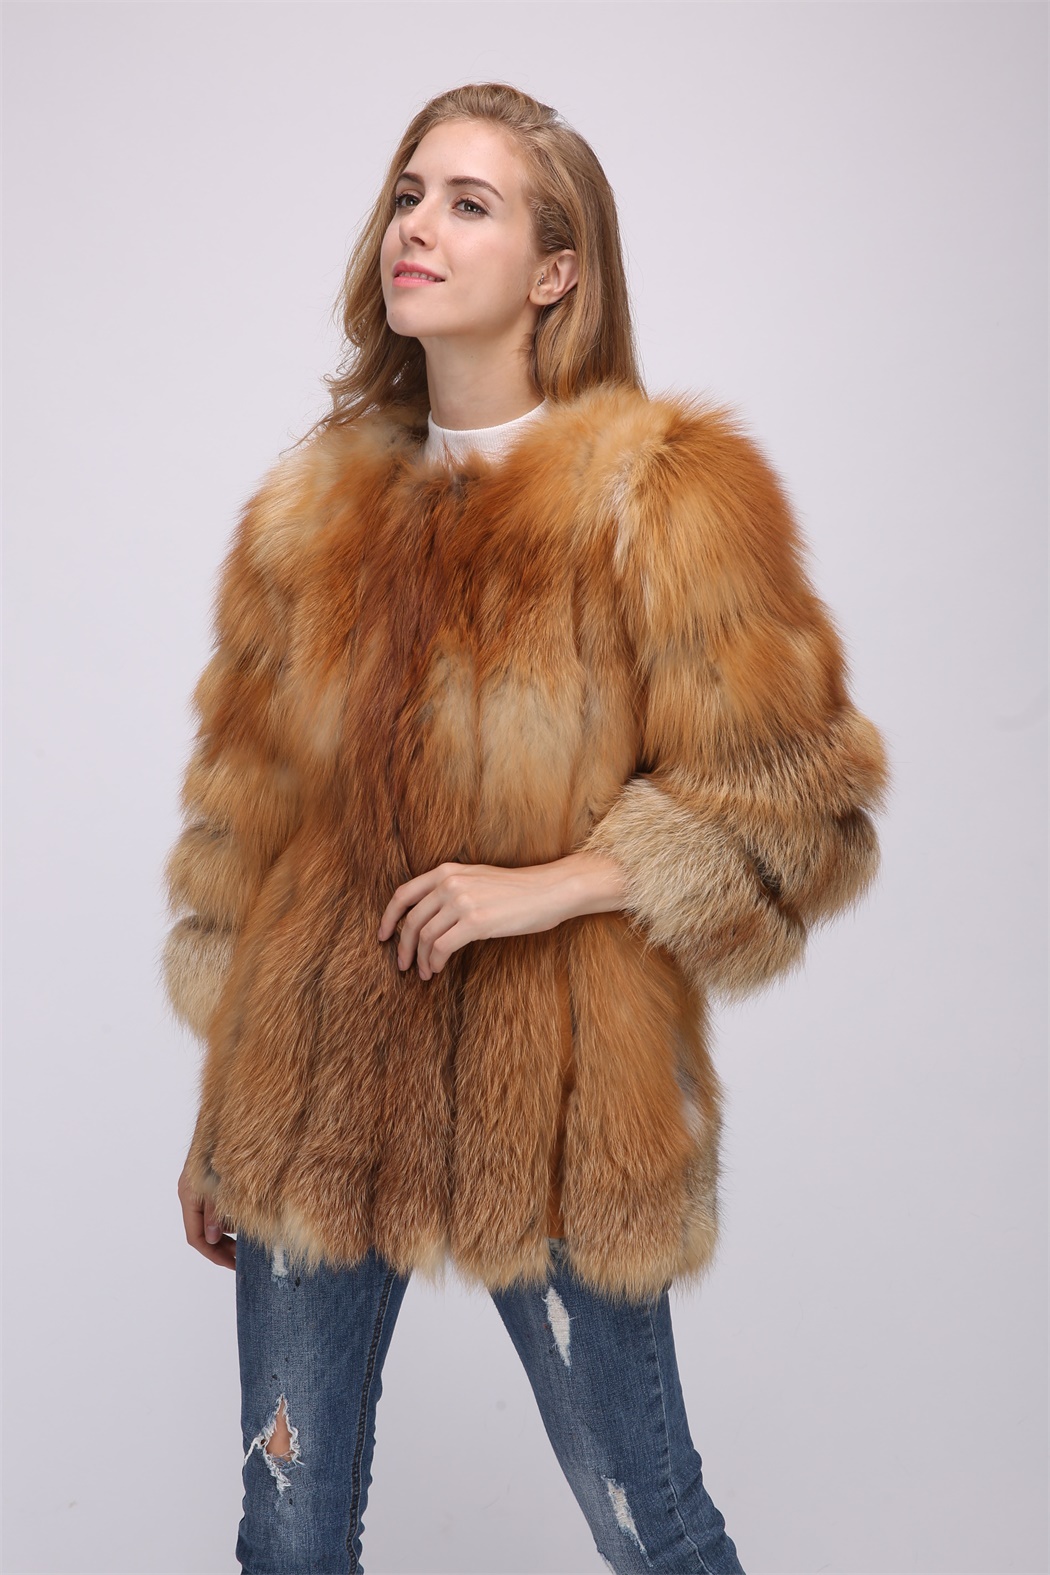 Red Fox Fur Coat 1708163 Lvcomeff